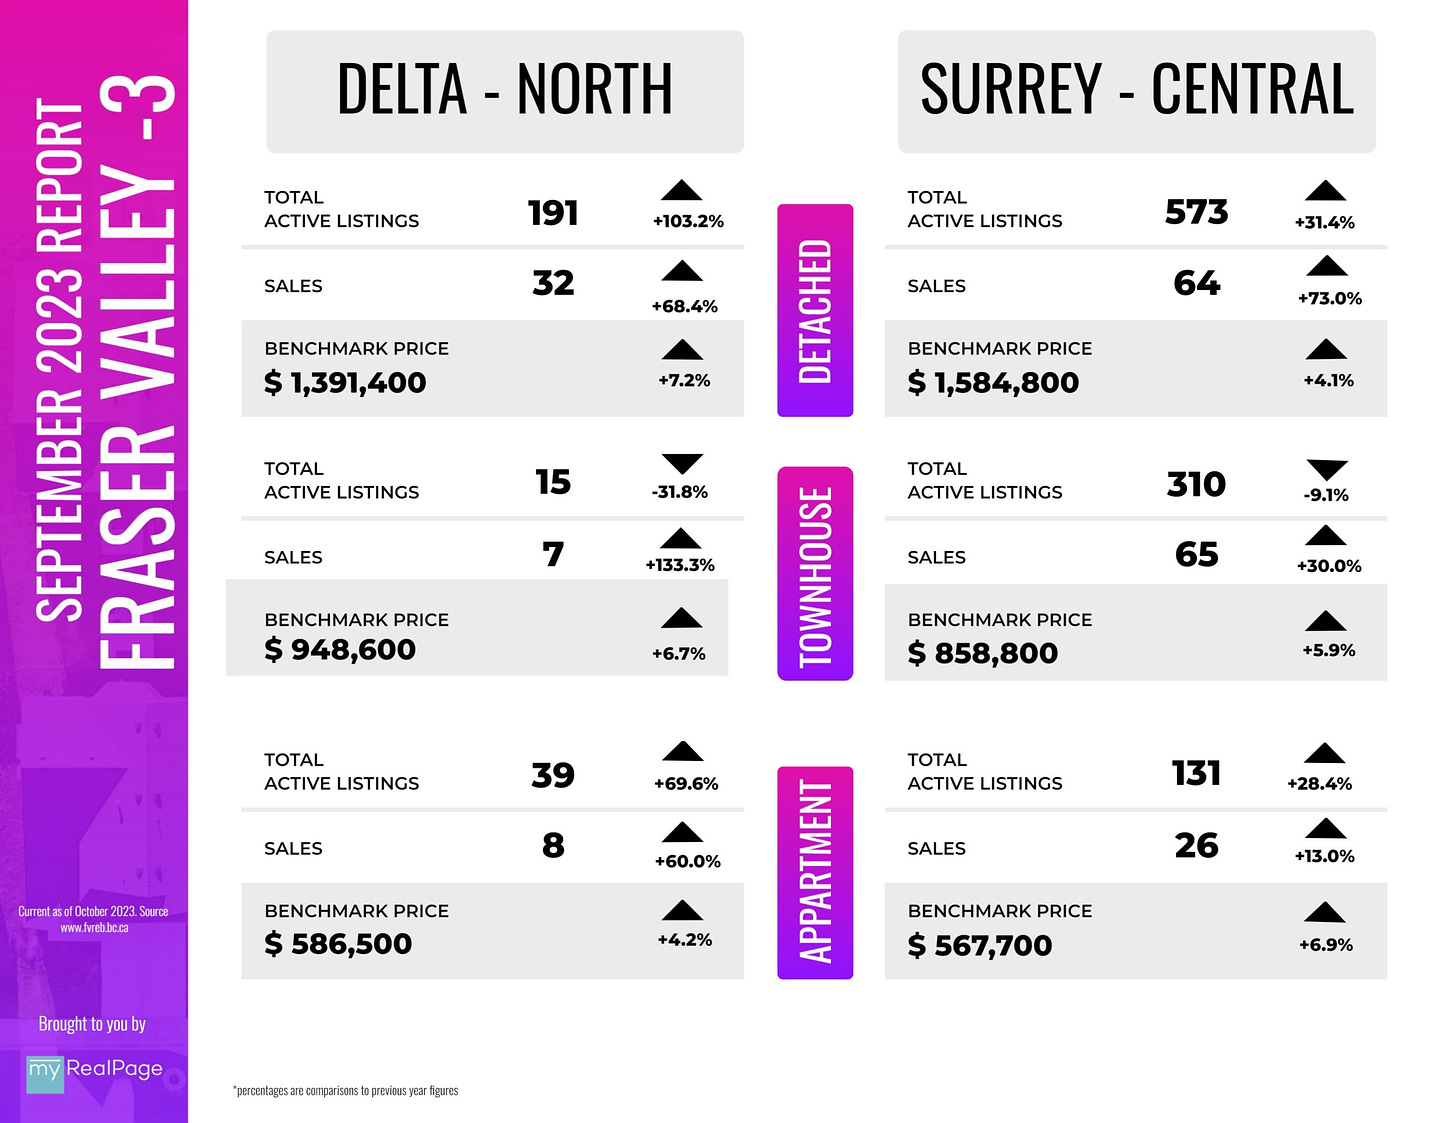 Central Surrey & North Delta home prices